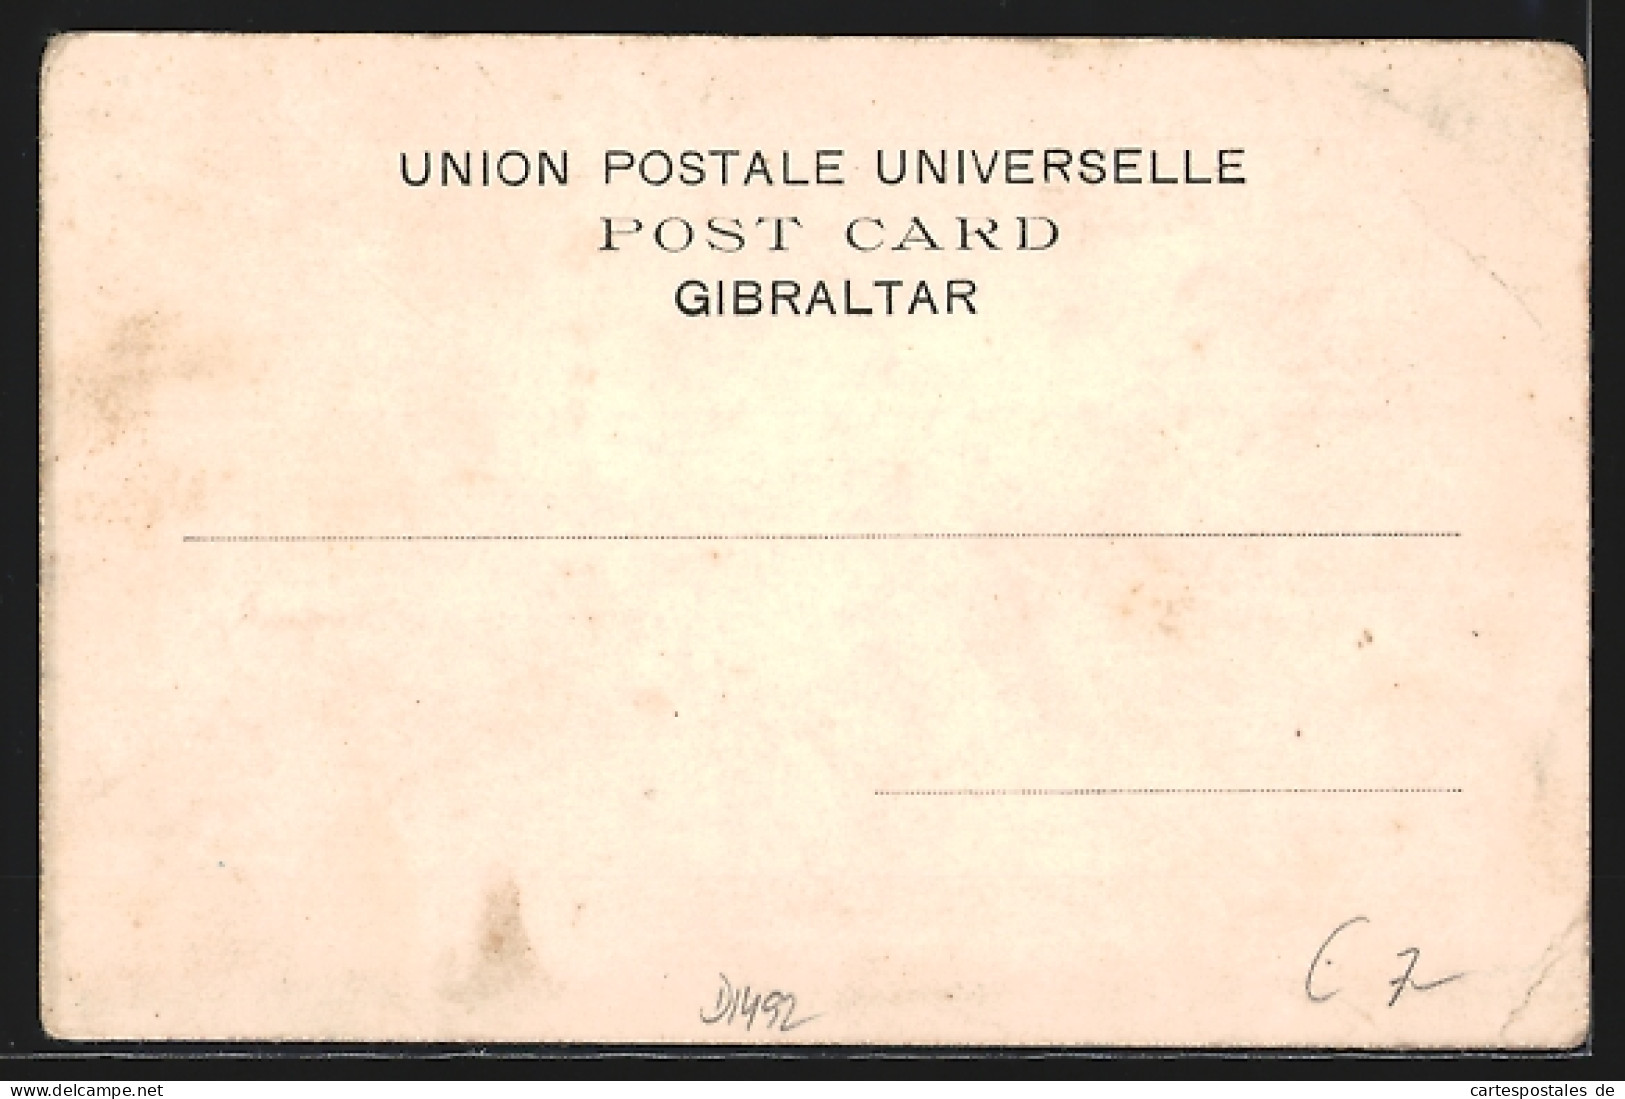 Postal Gibraltar, Casematas  - Gibraltar